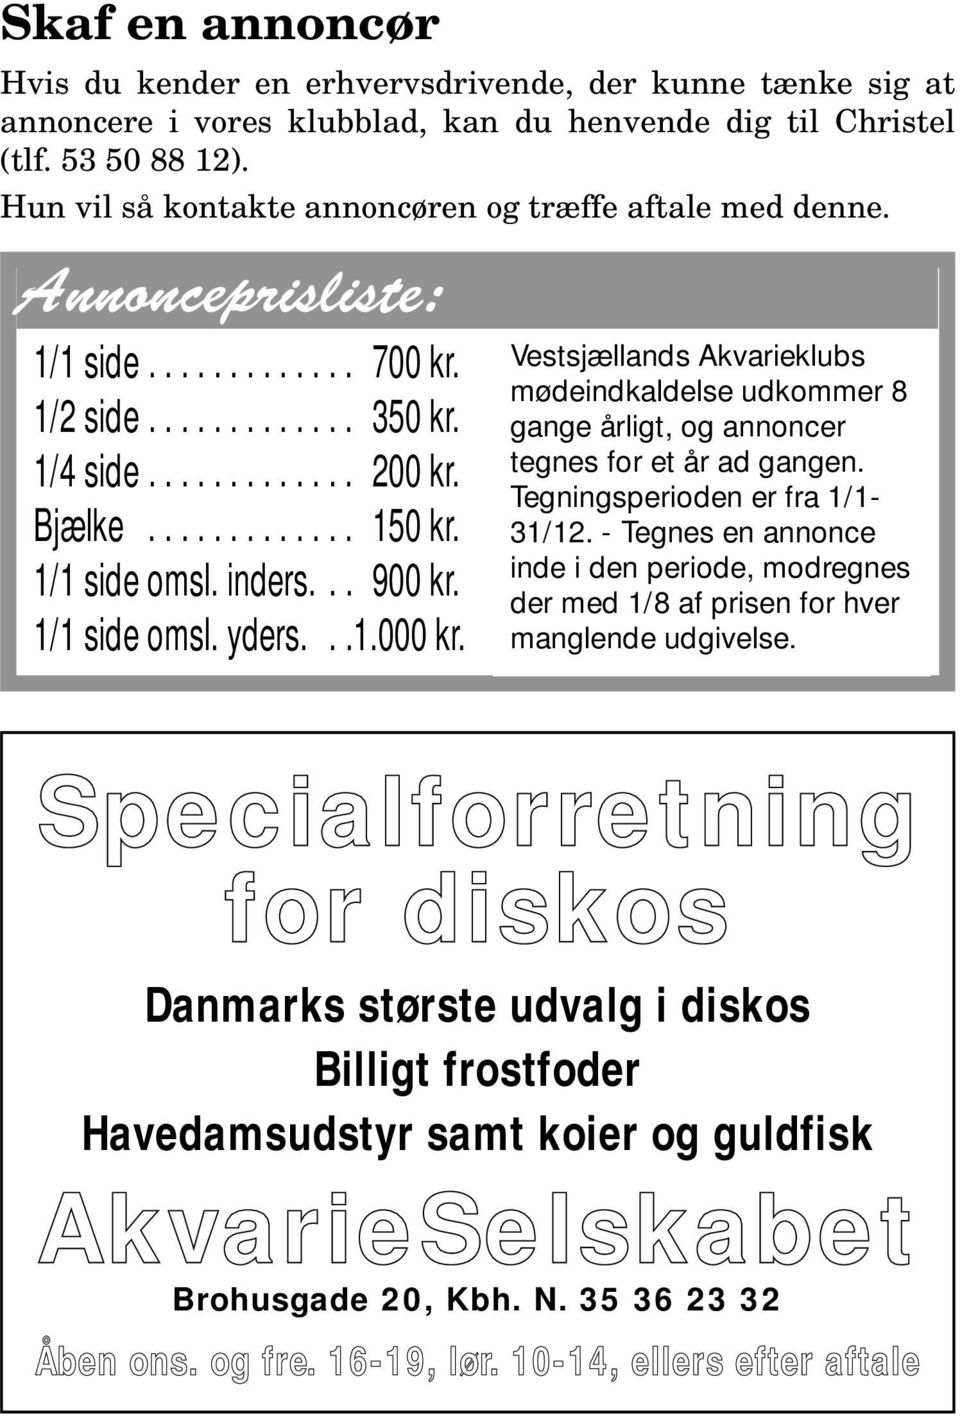 1/1 side omsl. inders... 900 kr. 1/1 side omsl. yders...1.000 kr. Vestsjællands Akvarieklubs mødeindkaldelse udkommer 8 gange årligt, og annoncer tegnes for et år ad gangen.